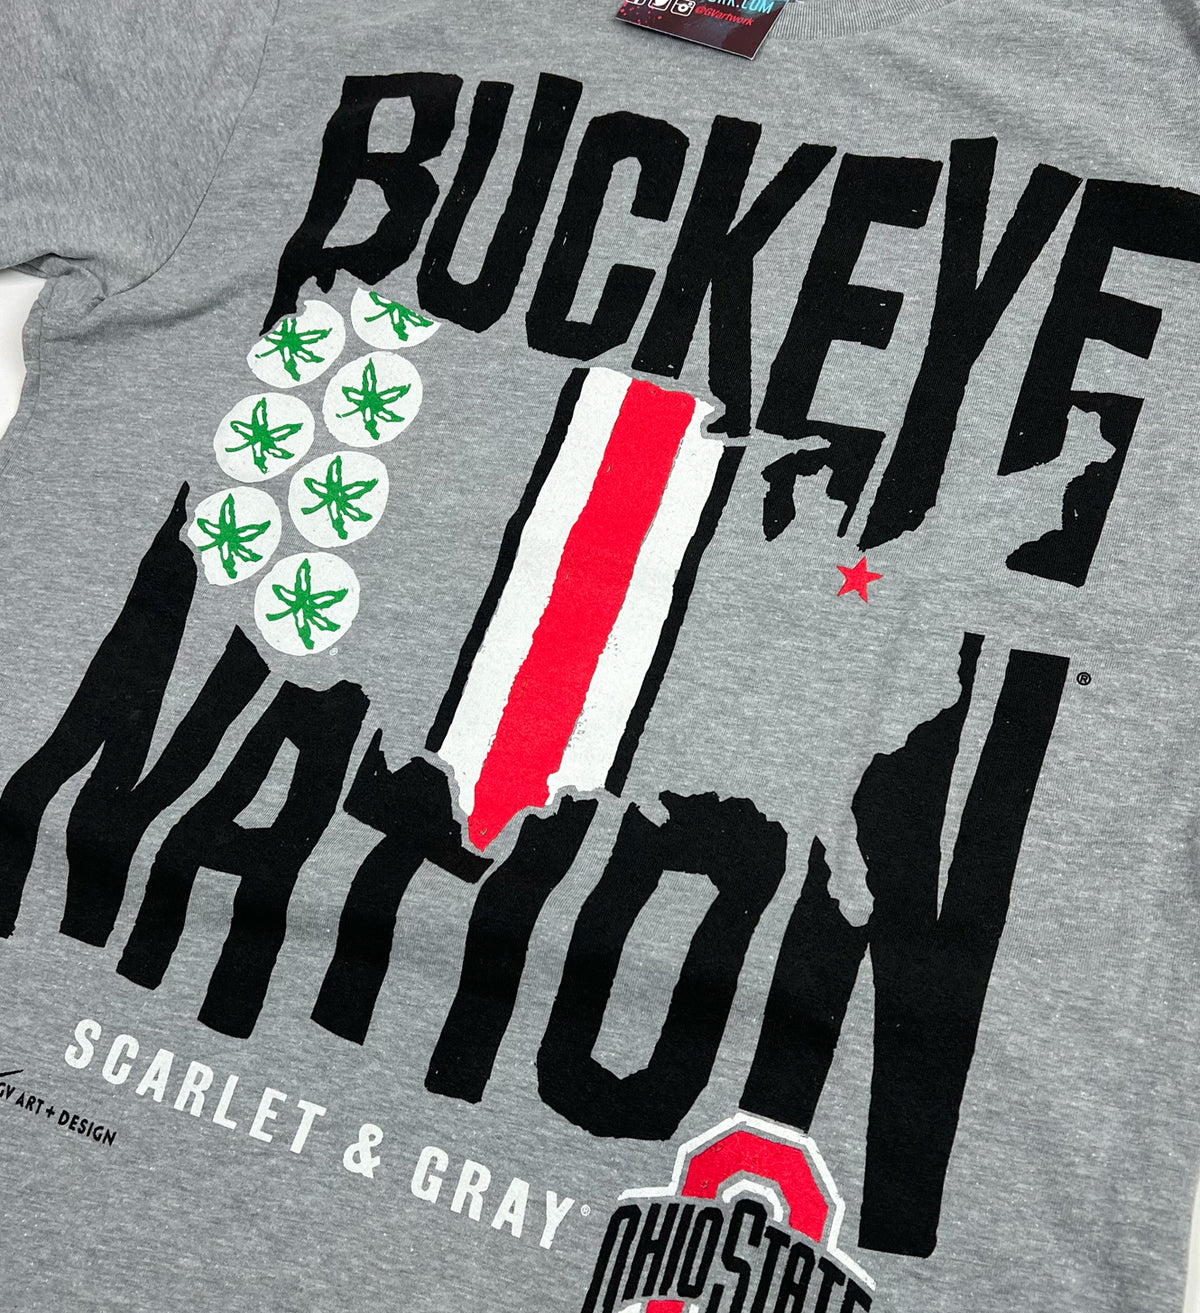 Ohio State Buckeye Nation T shirt